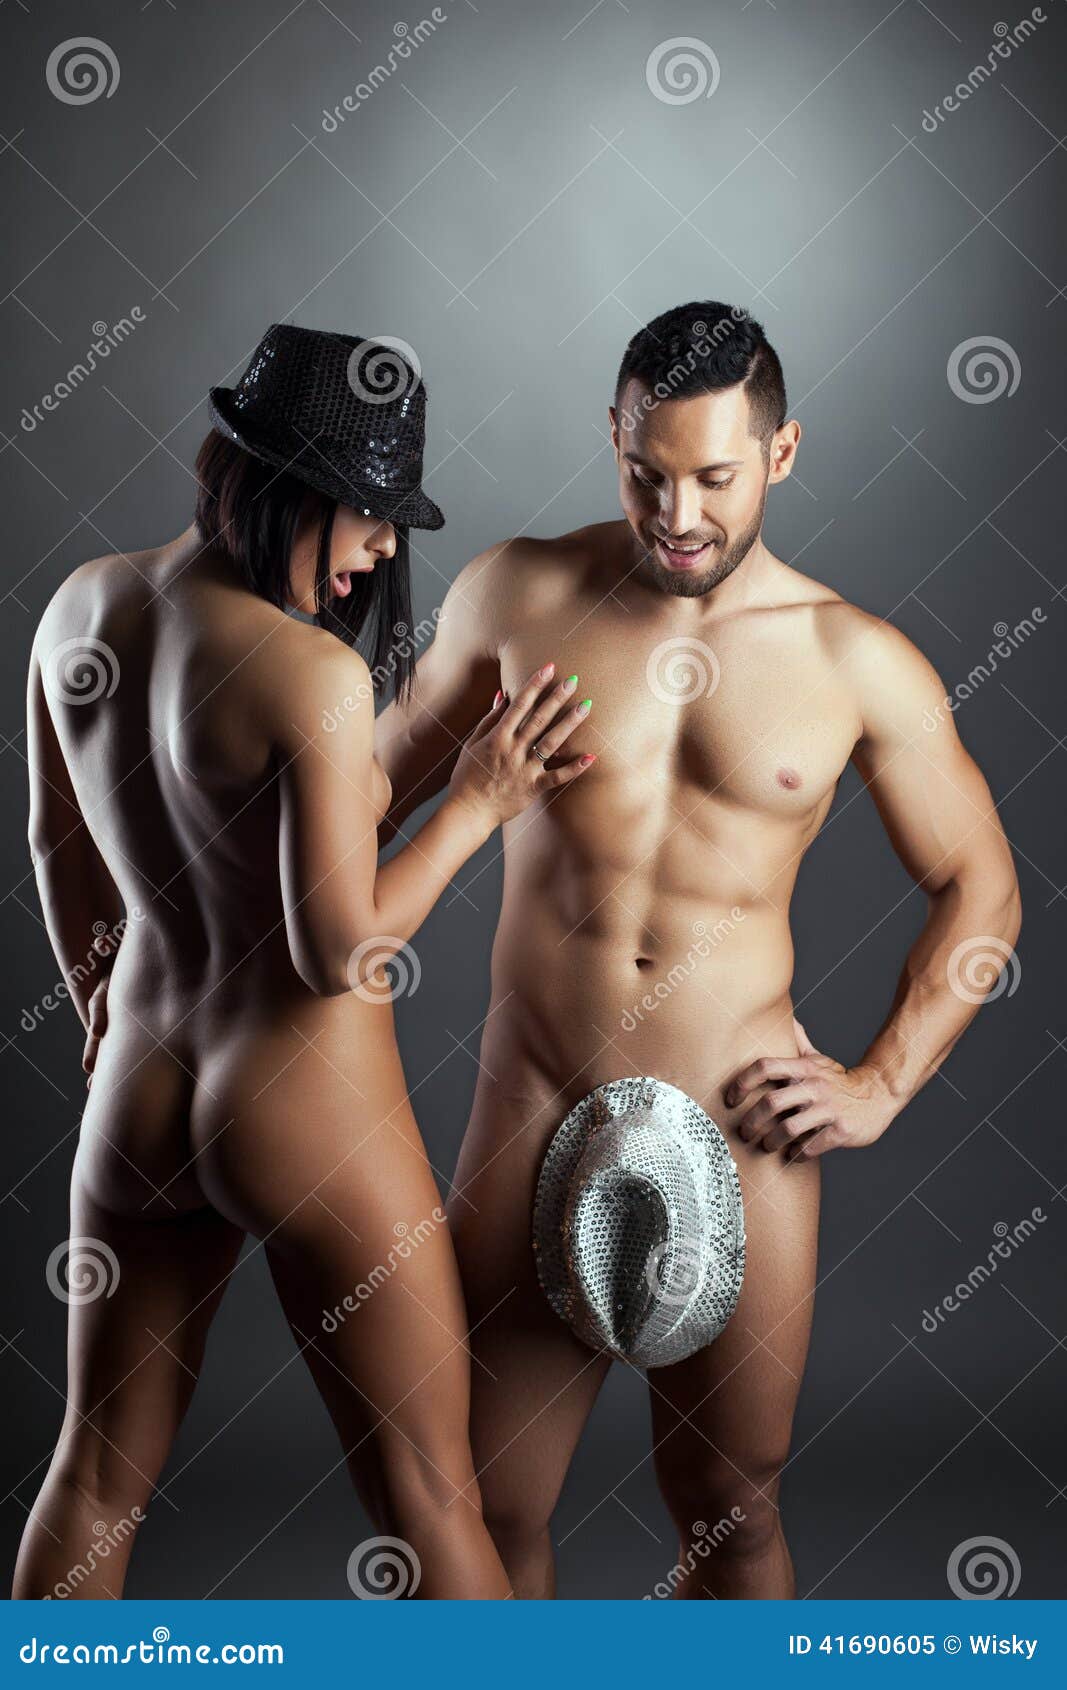 nude women with men